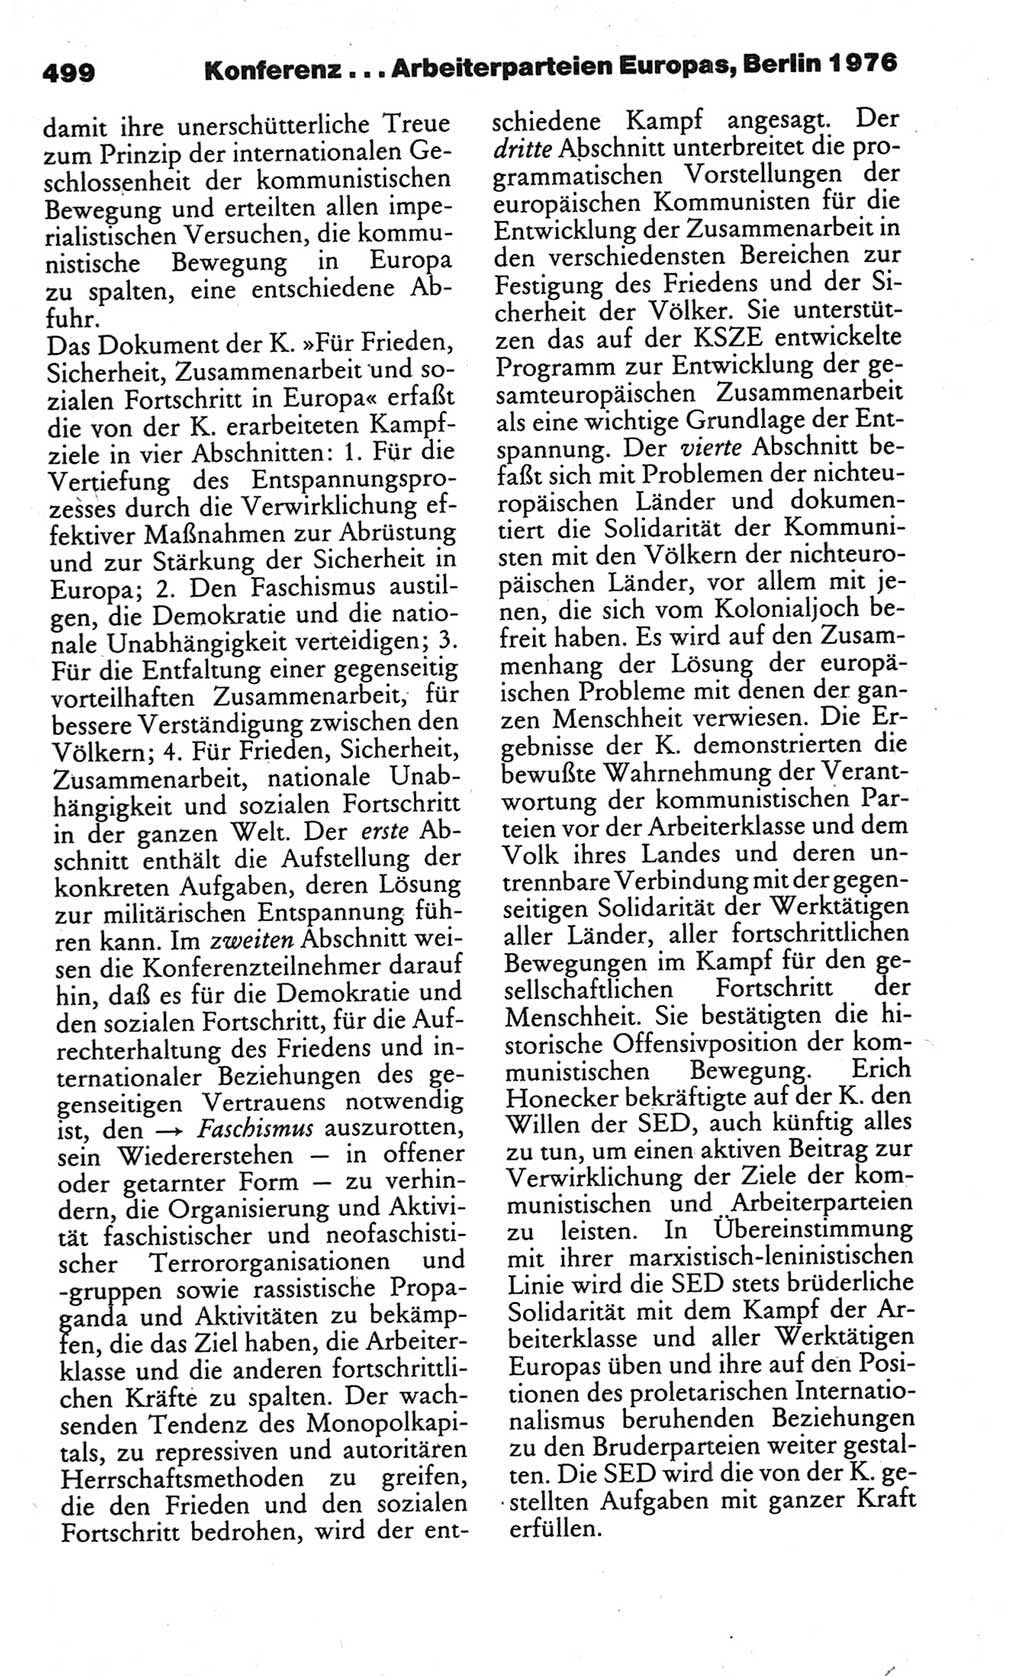 Kleines politisches Wörterbuch [Deutsche Demokratische Republik (DDR)] 1986, Seite 499 (Kl. pol. Wb. DDR 1986, S. 499)